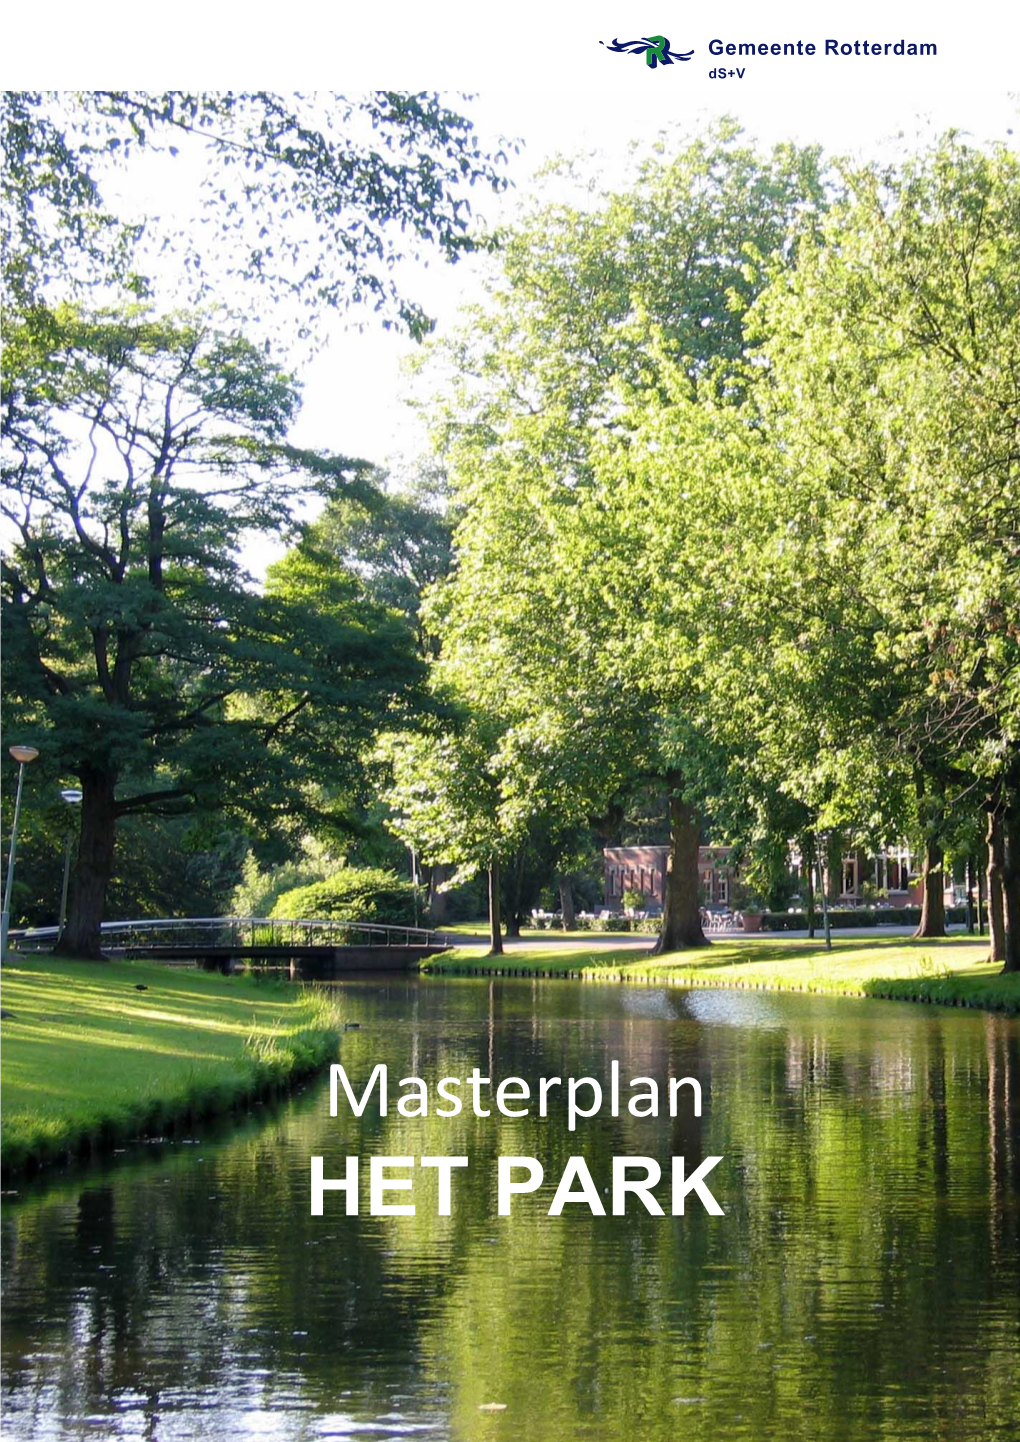 Masterplan Het Park (9 Juli 2011)